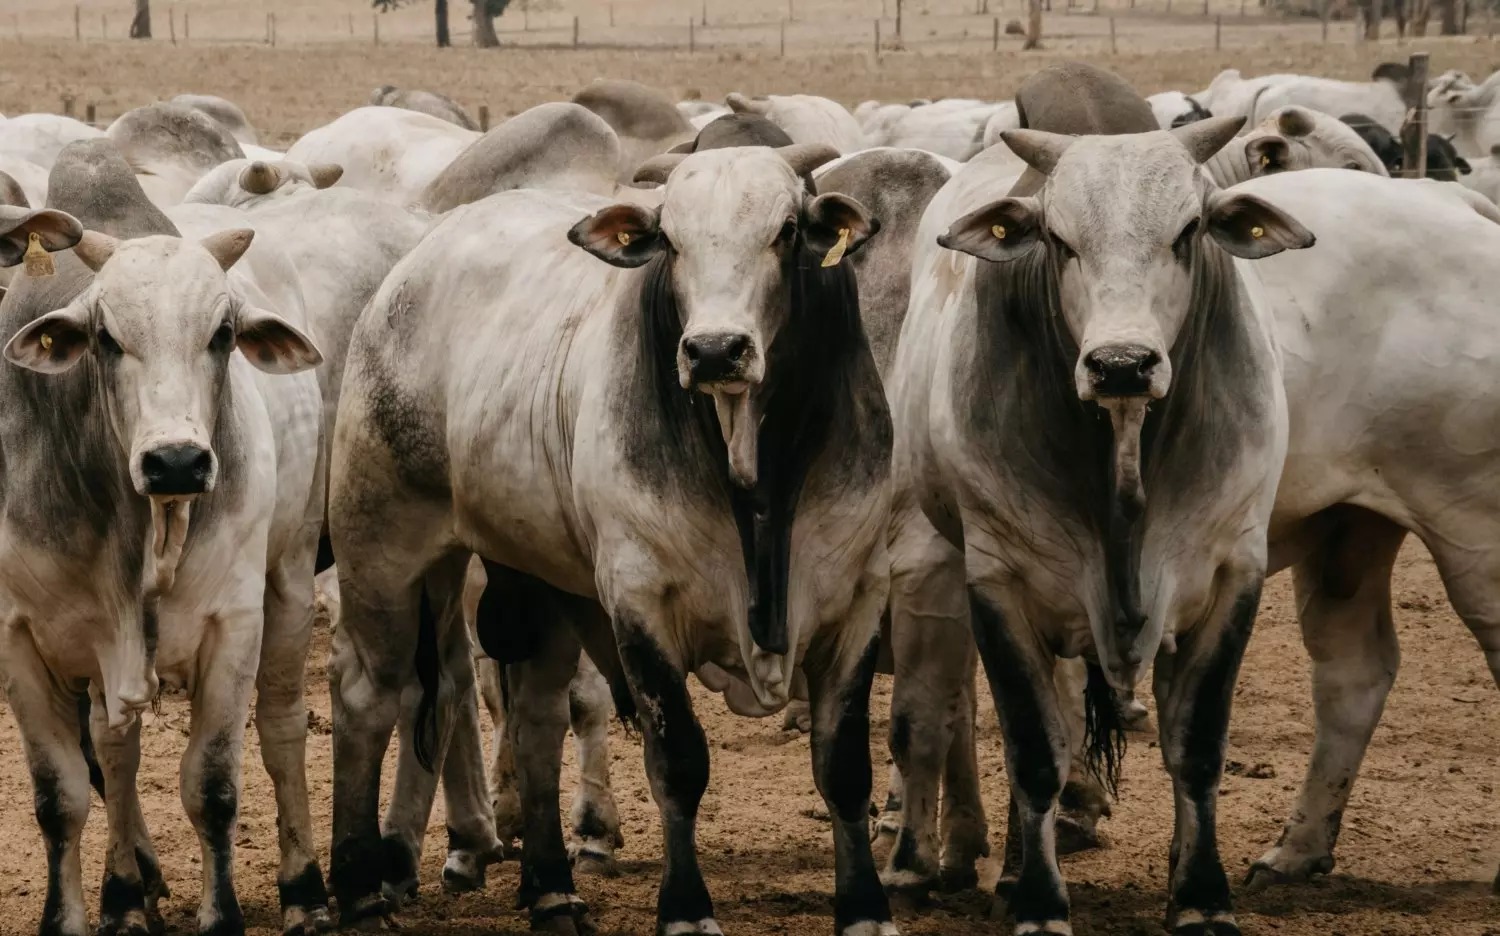 número do abate de bovinos